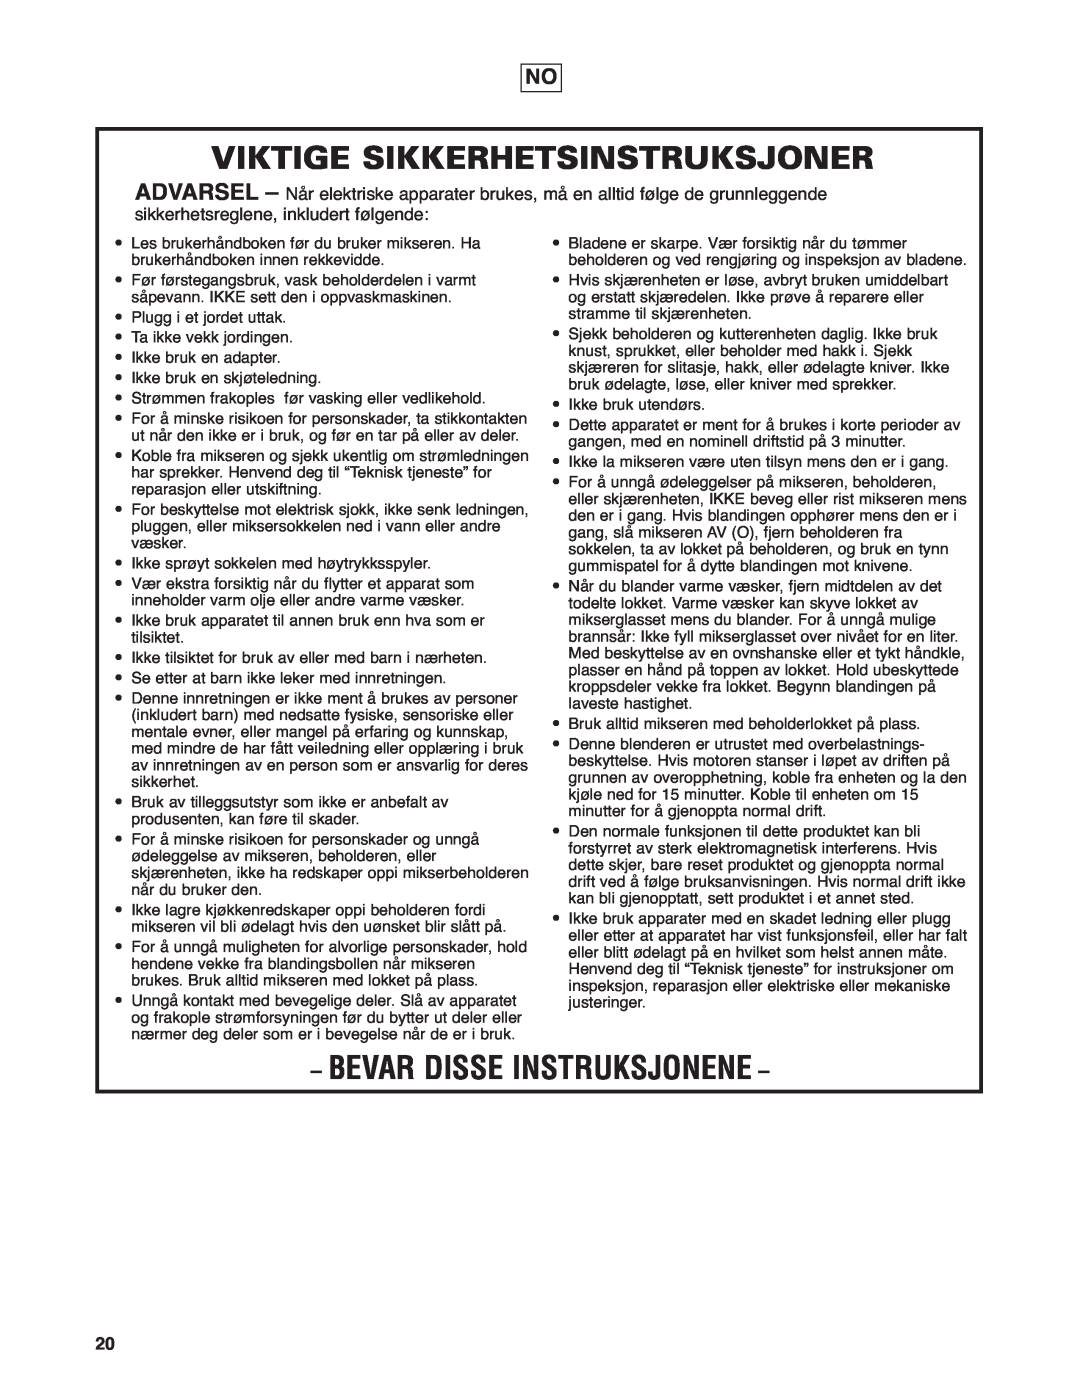 Hamilton Beach HBF400 Viktige Sikkerhetsinstruksjoner, Bevar Disse Instruksjonene, sikkerhetsreglene, inkludert følgende 